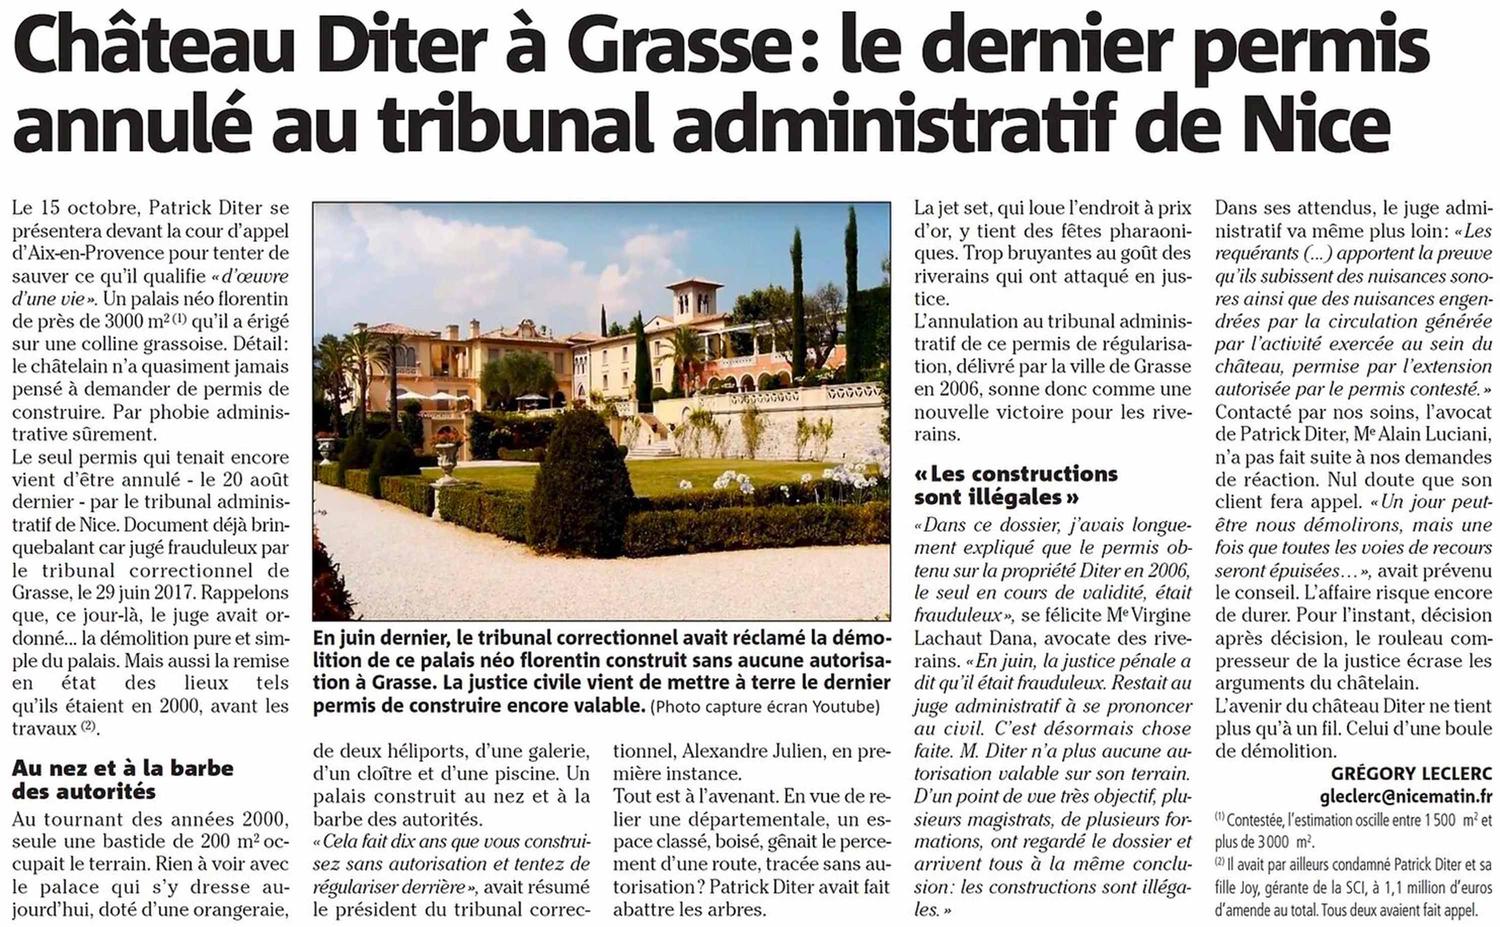 Château Diter : le dernier permis de construire annulé